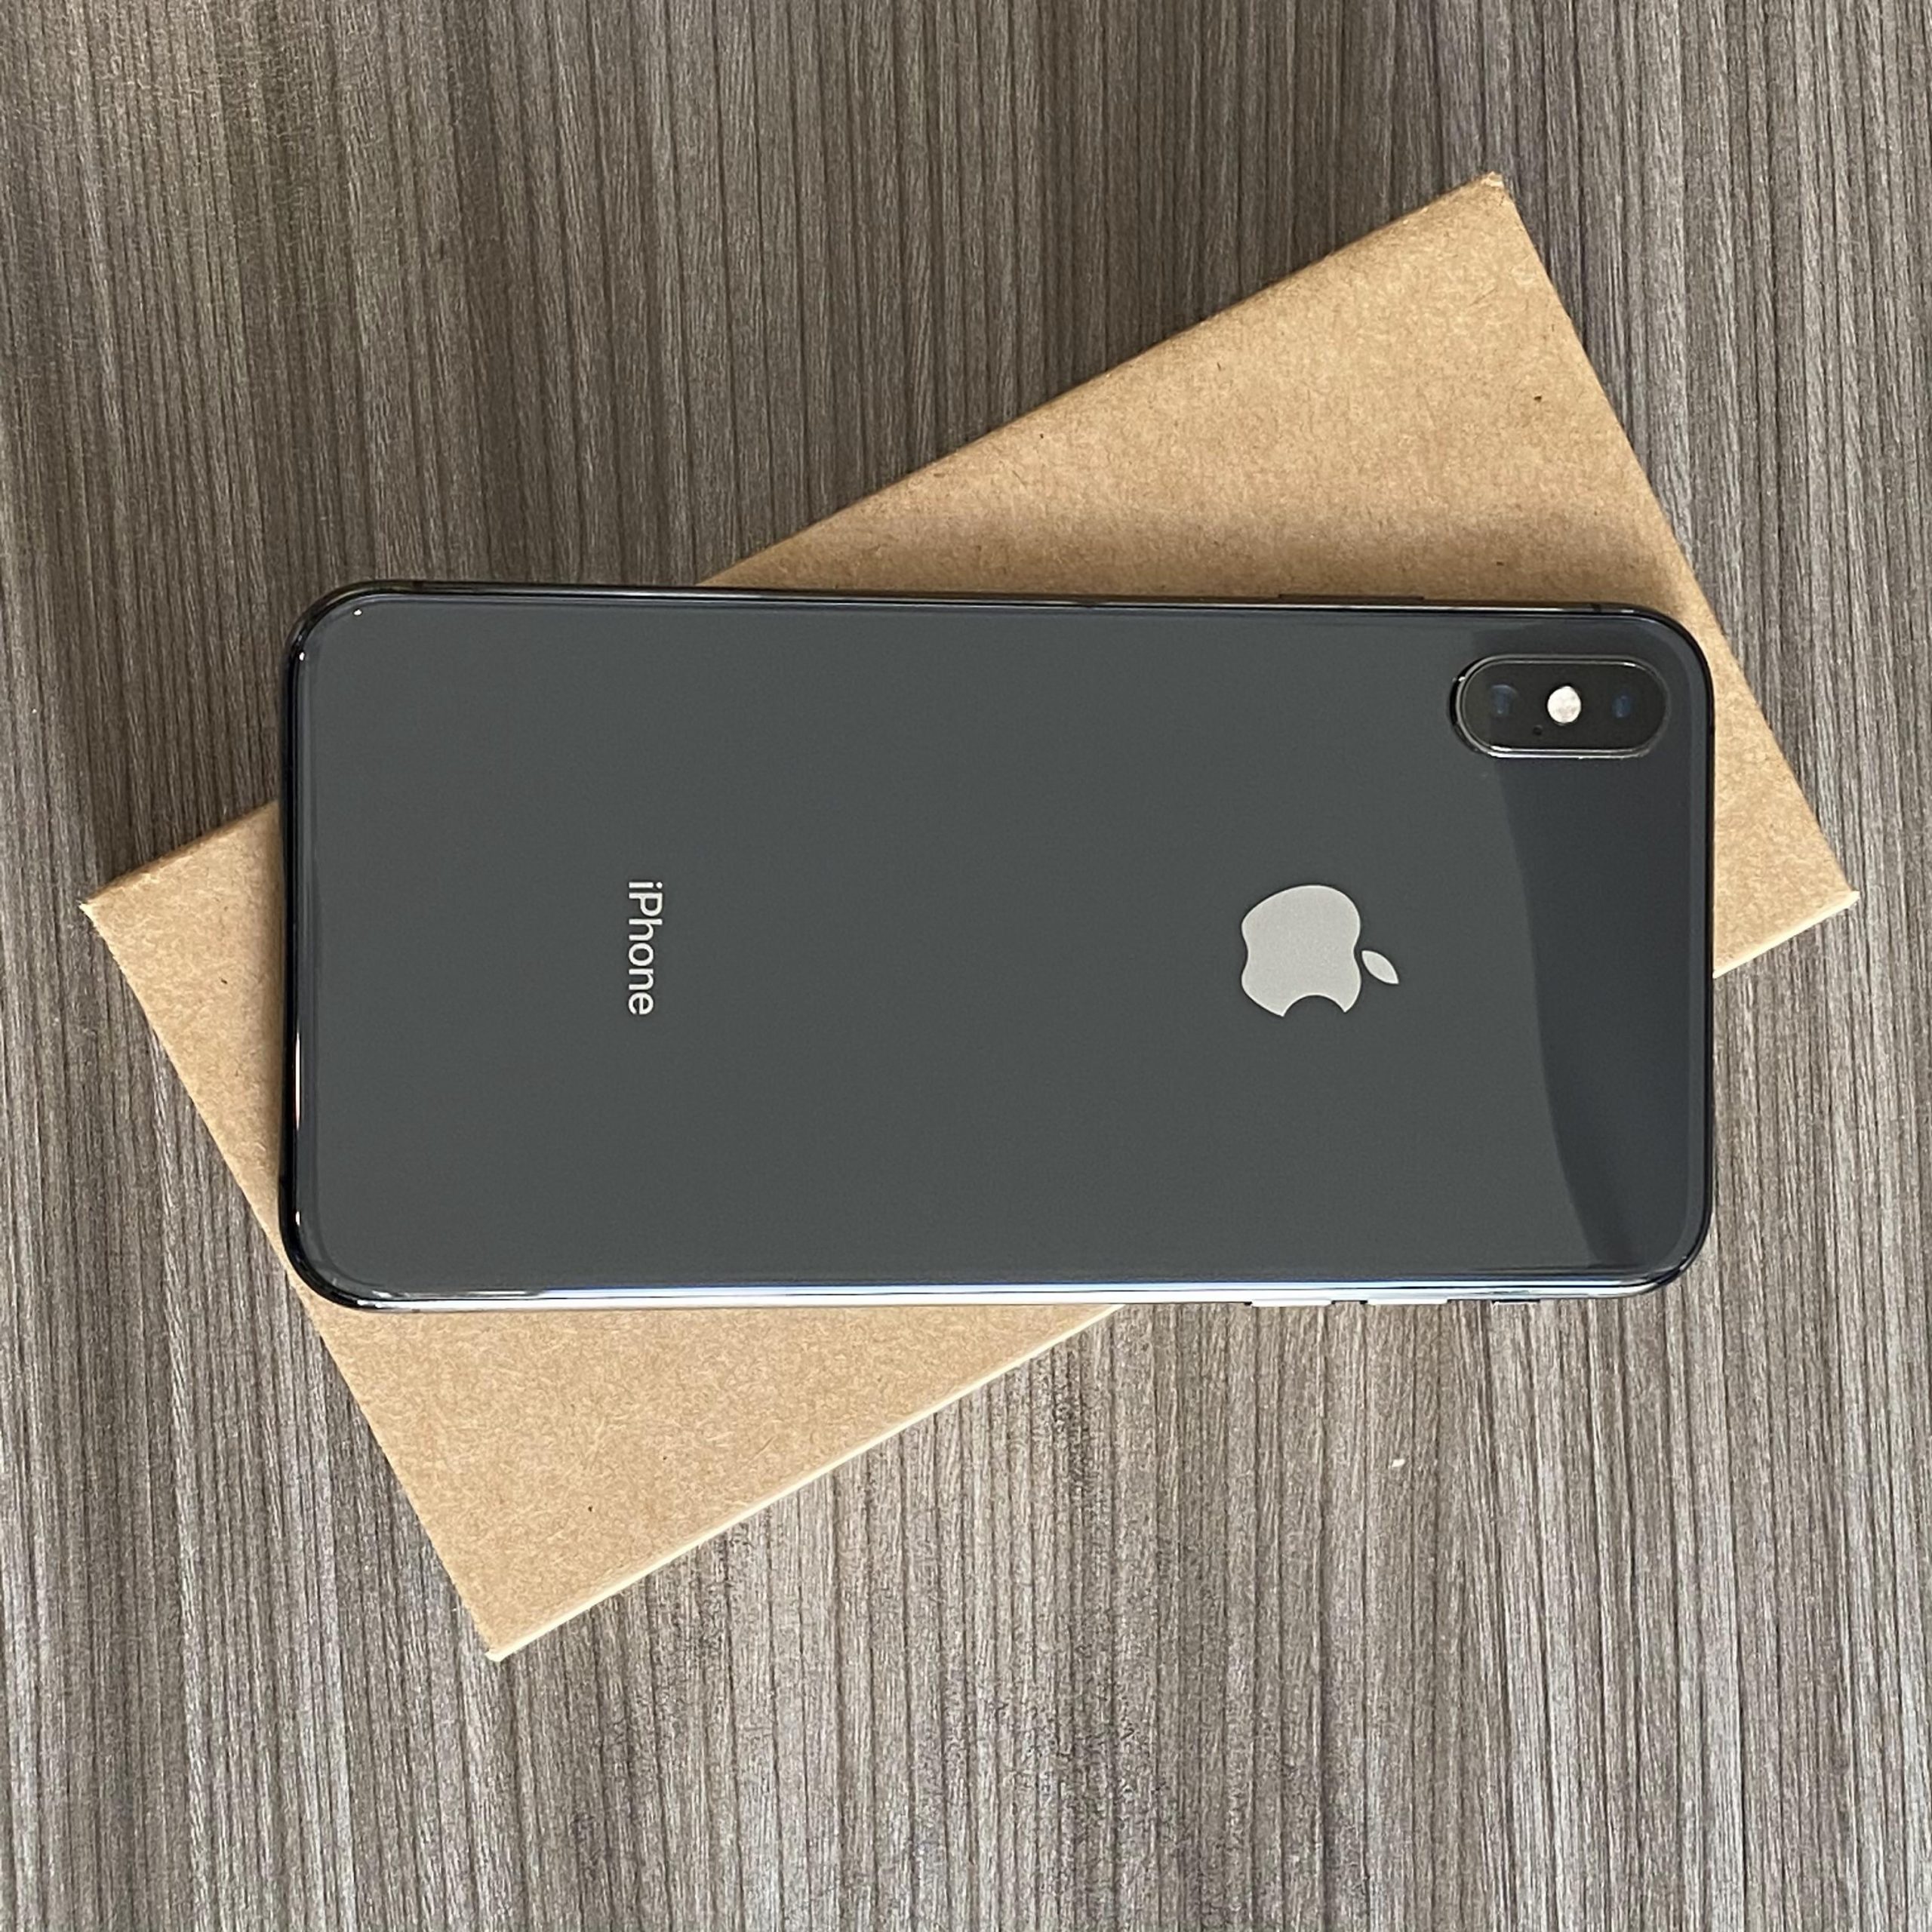 iPhone SE 2020: Hơn cả một chiếc smartphone - Sự pha trộn hoàn hảo của công nghệ và thiết kế 2